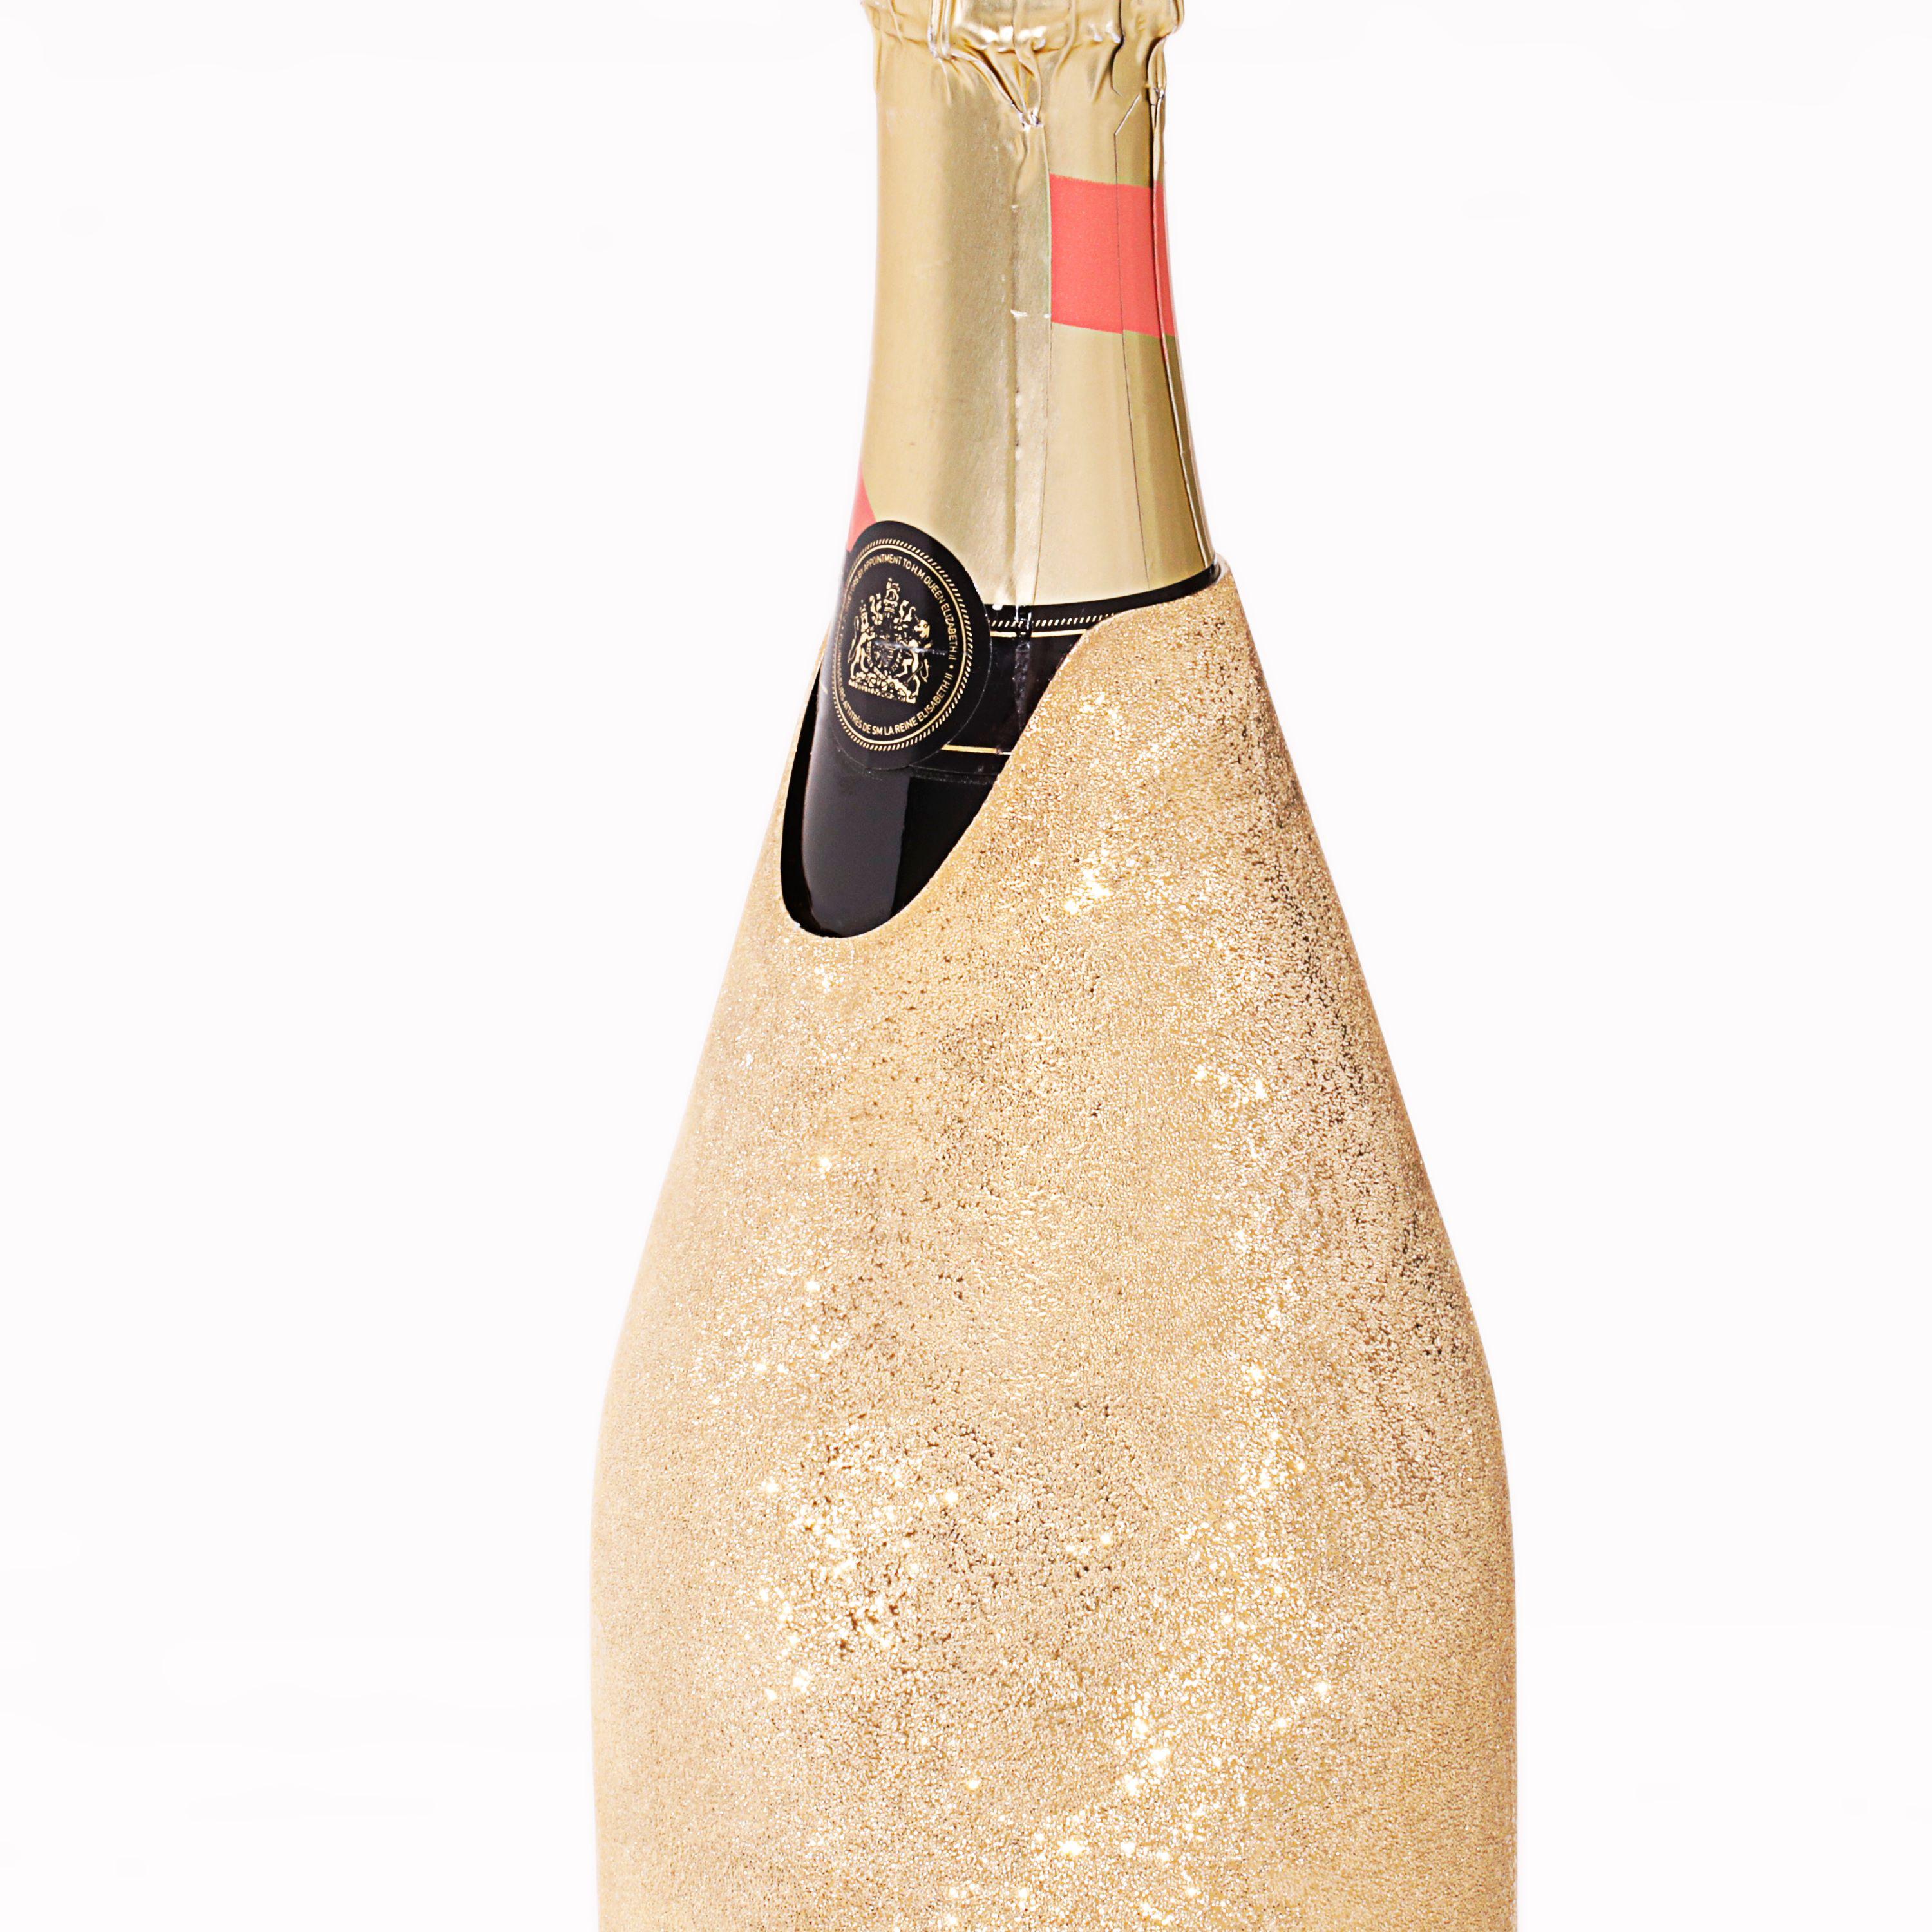 Der Wert dieses Champagnerdeckels beruht auf den innovativen Techniken, die bei seiner Herstellung angewandt wurden. Wie auf den Bildern deutlich zu sehen ist, leuchtet die Oberfläche des reinen Silbers 999/°° K-OVER wie die Sonne. Diese innovative